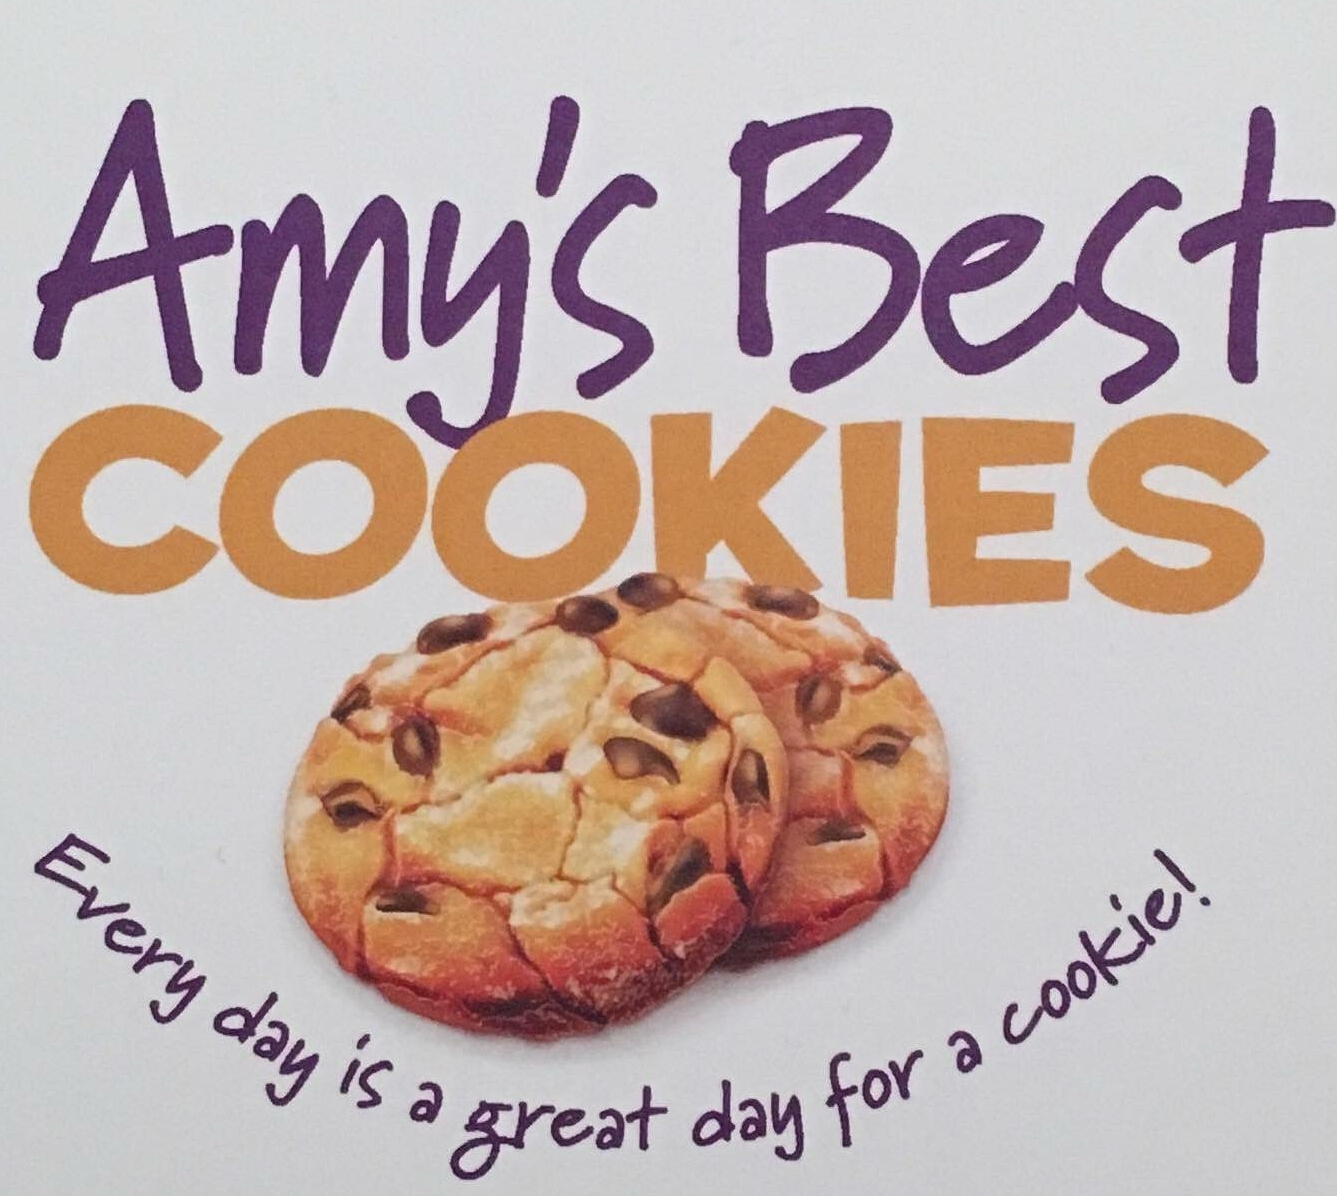 Amy’s Best Cookies LLC